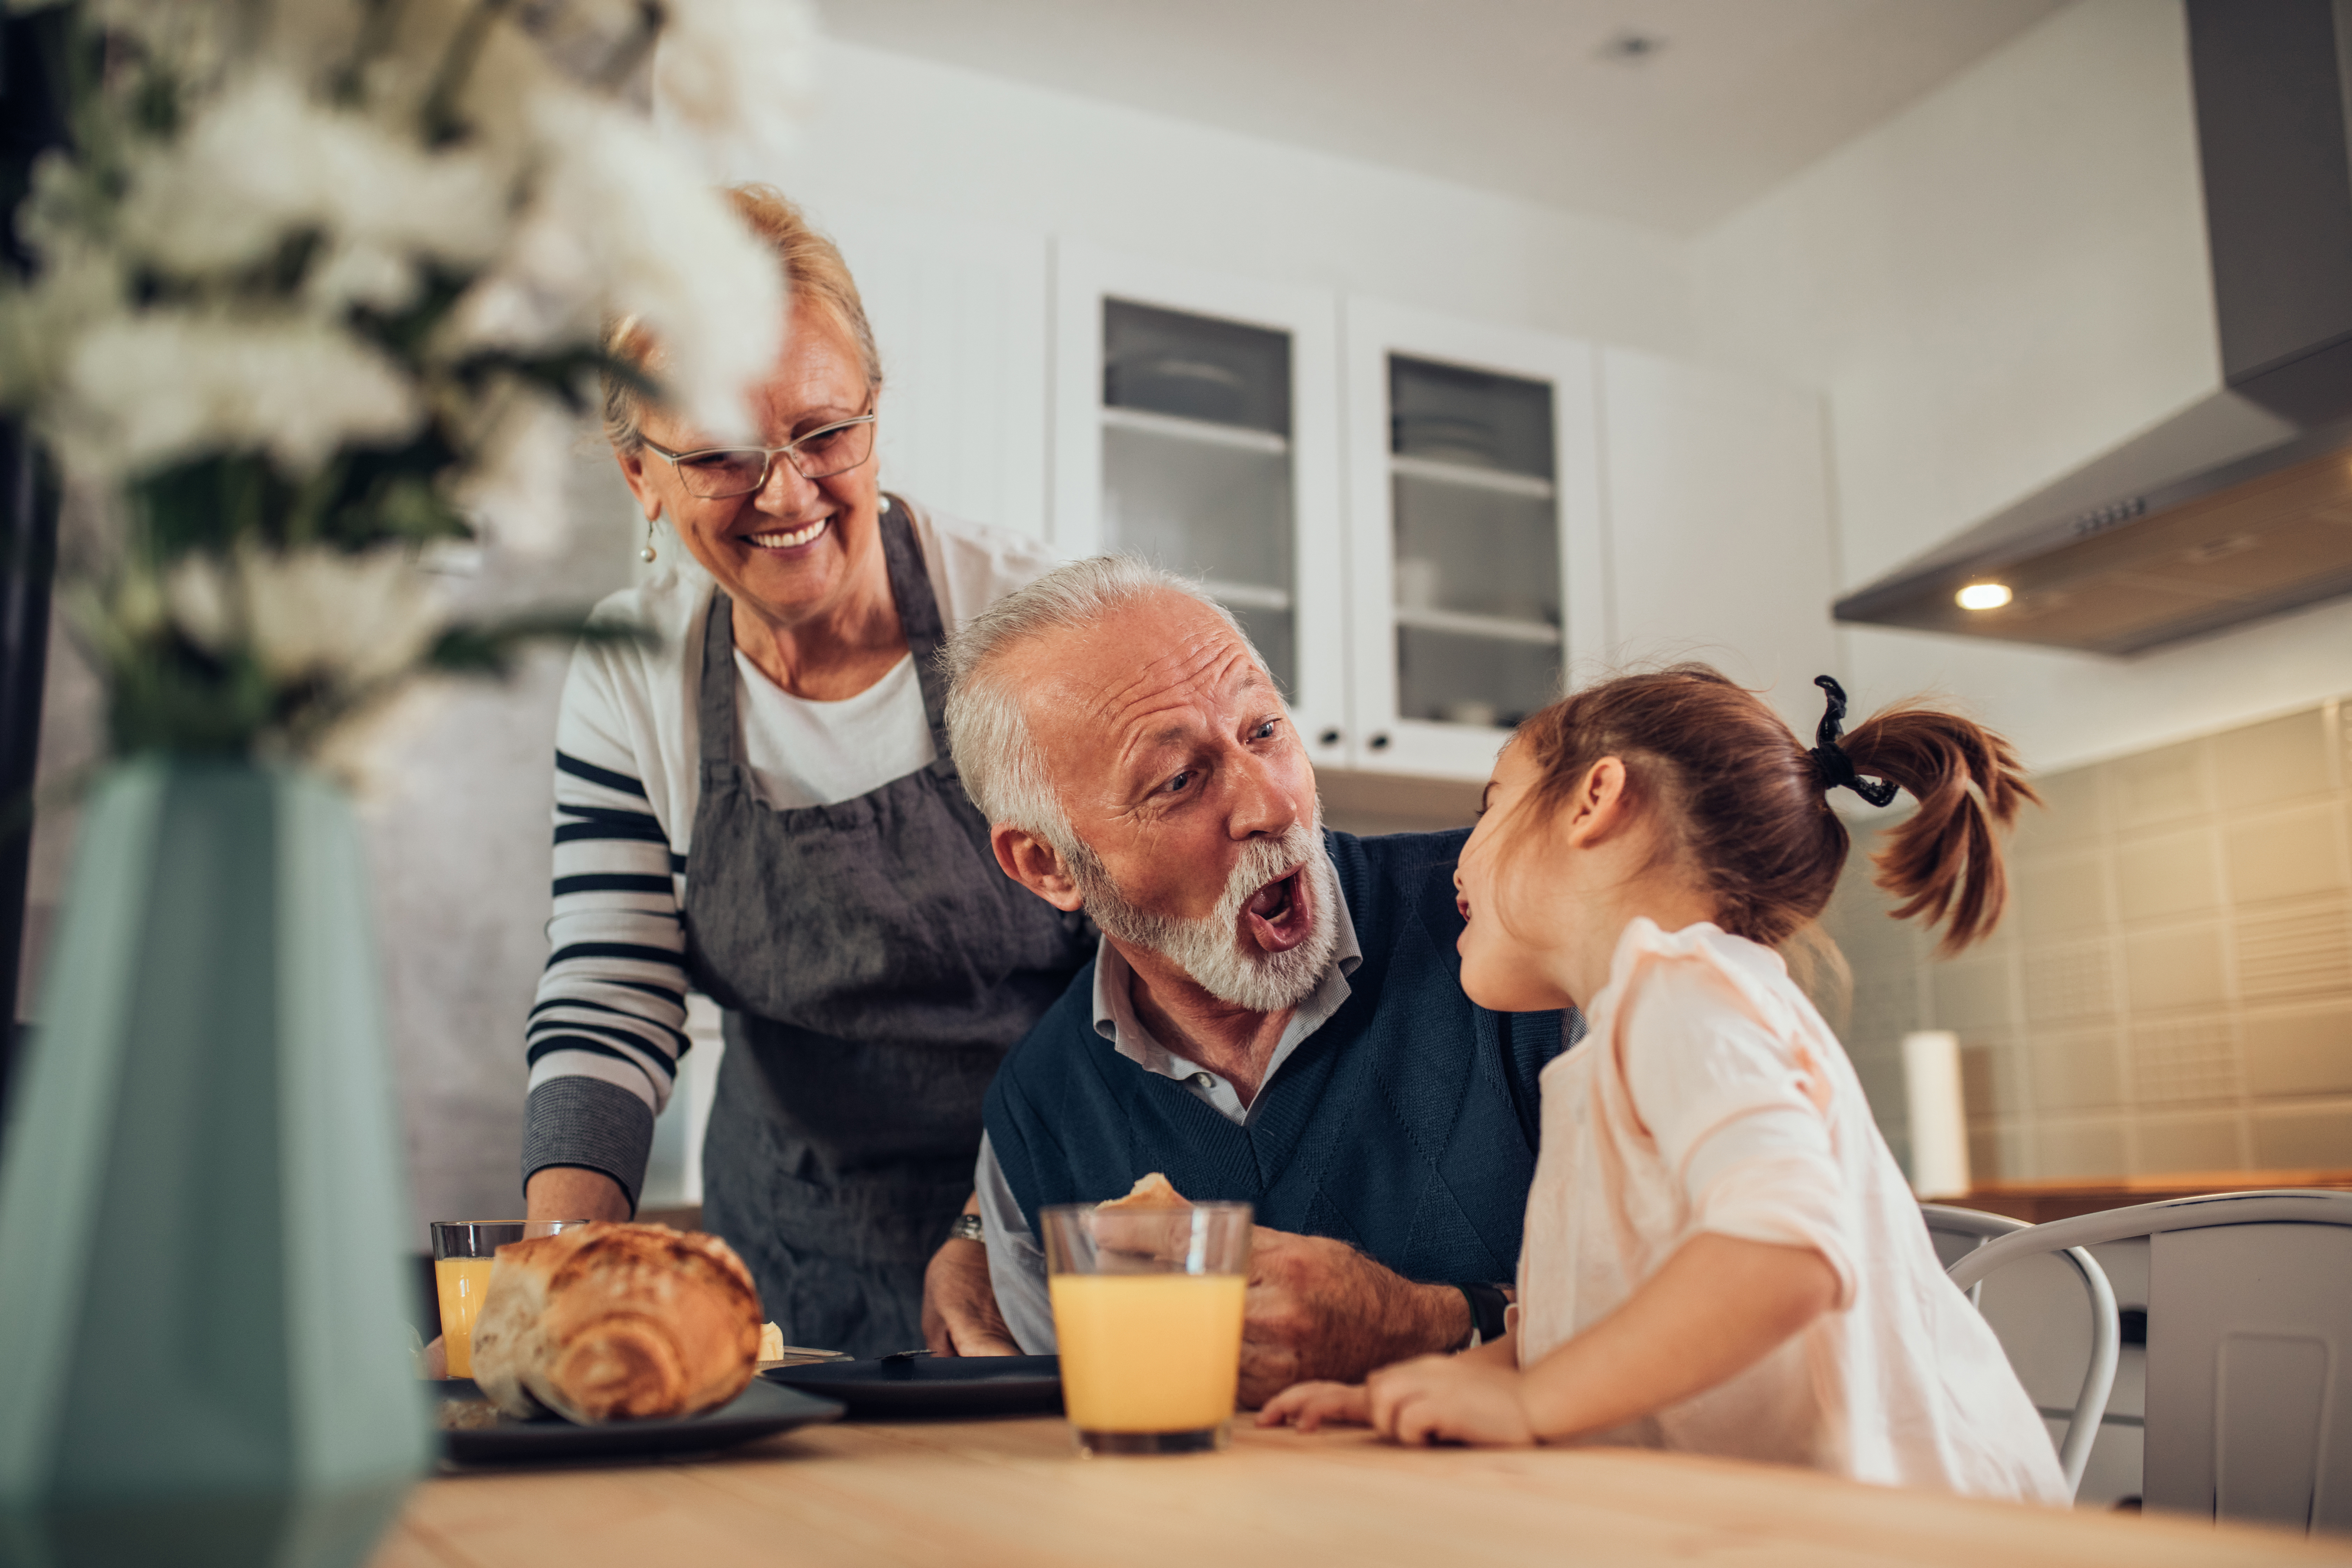 Des grands-parents profitent d'un repas avec leur petite-fille | Source : Shutterstock